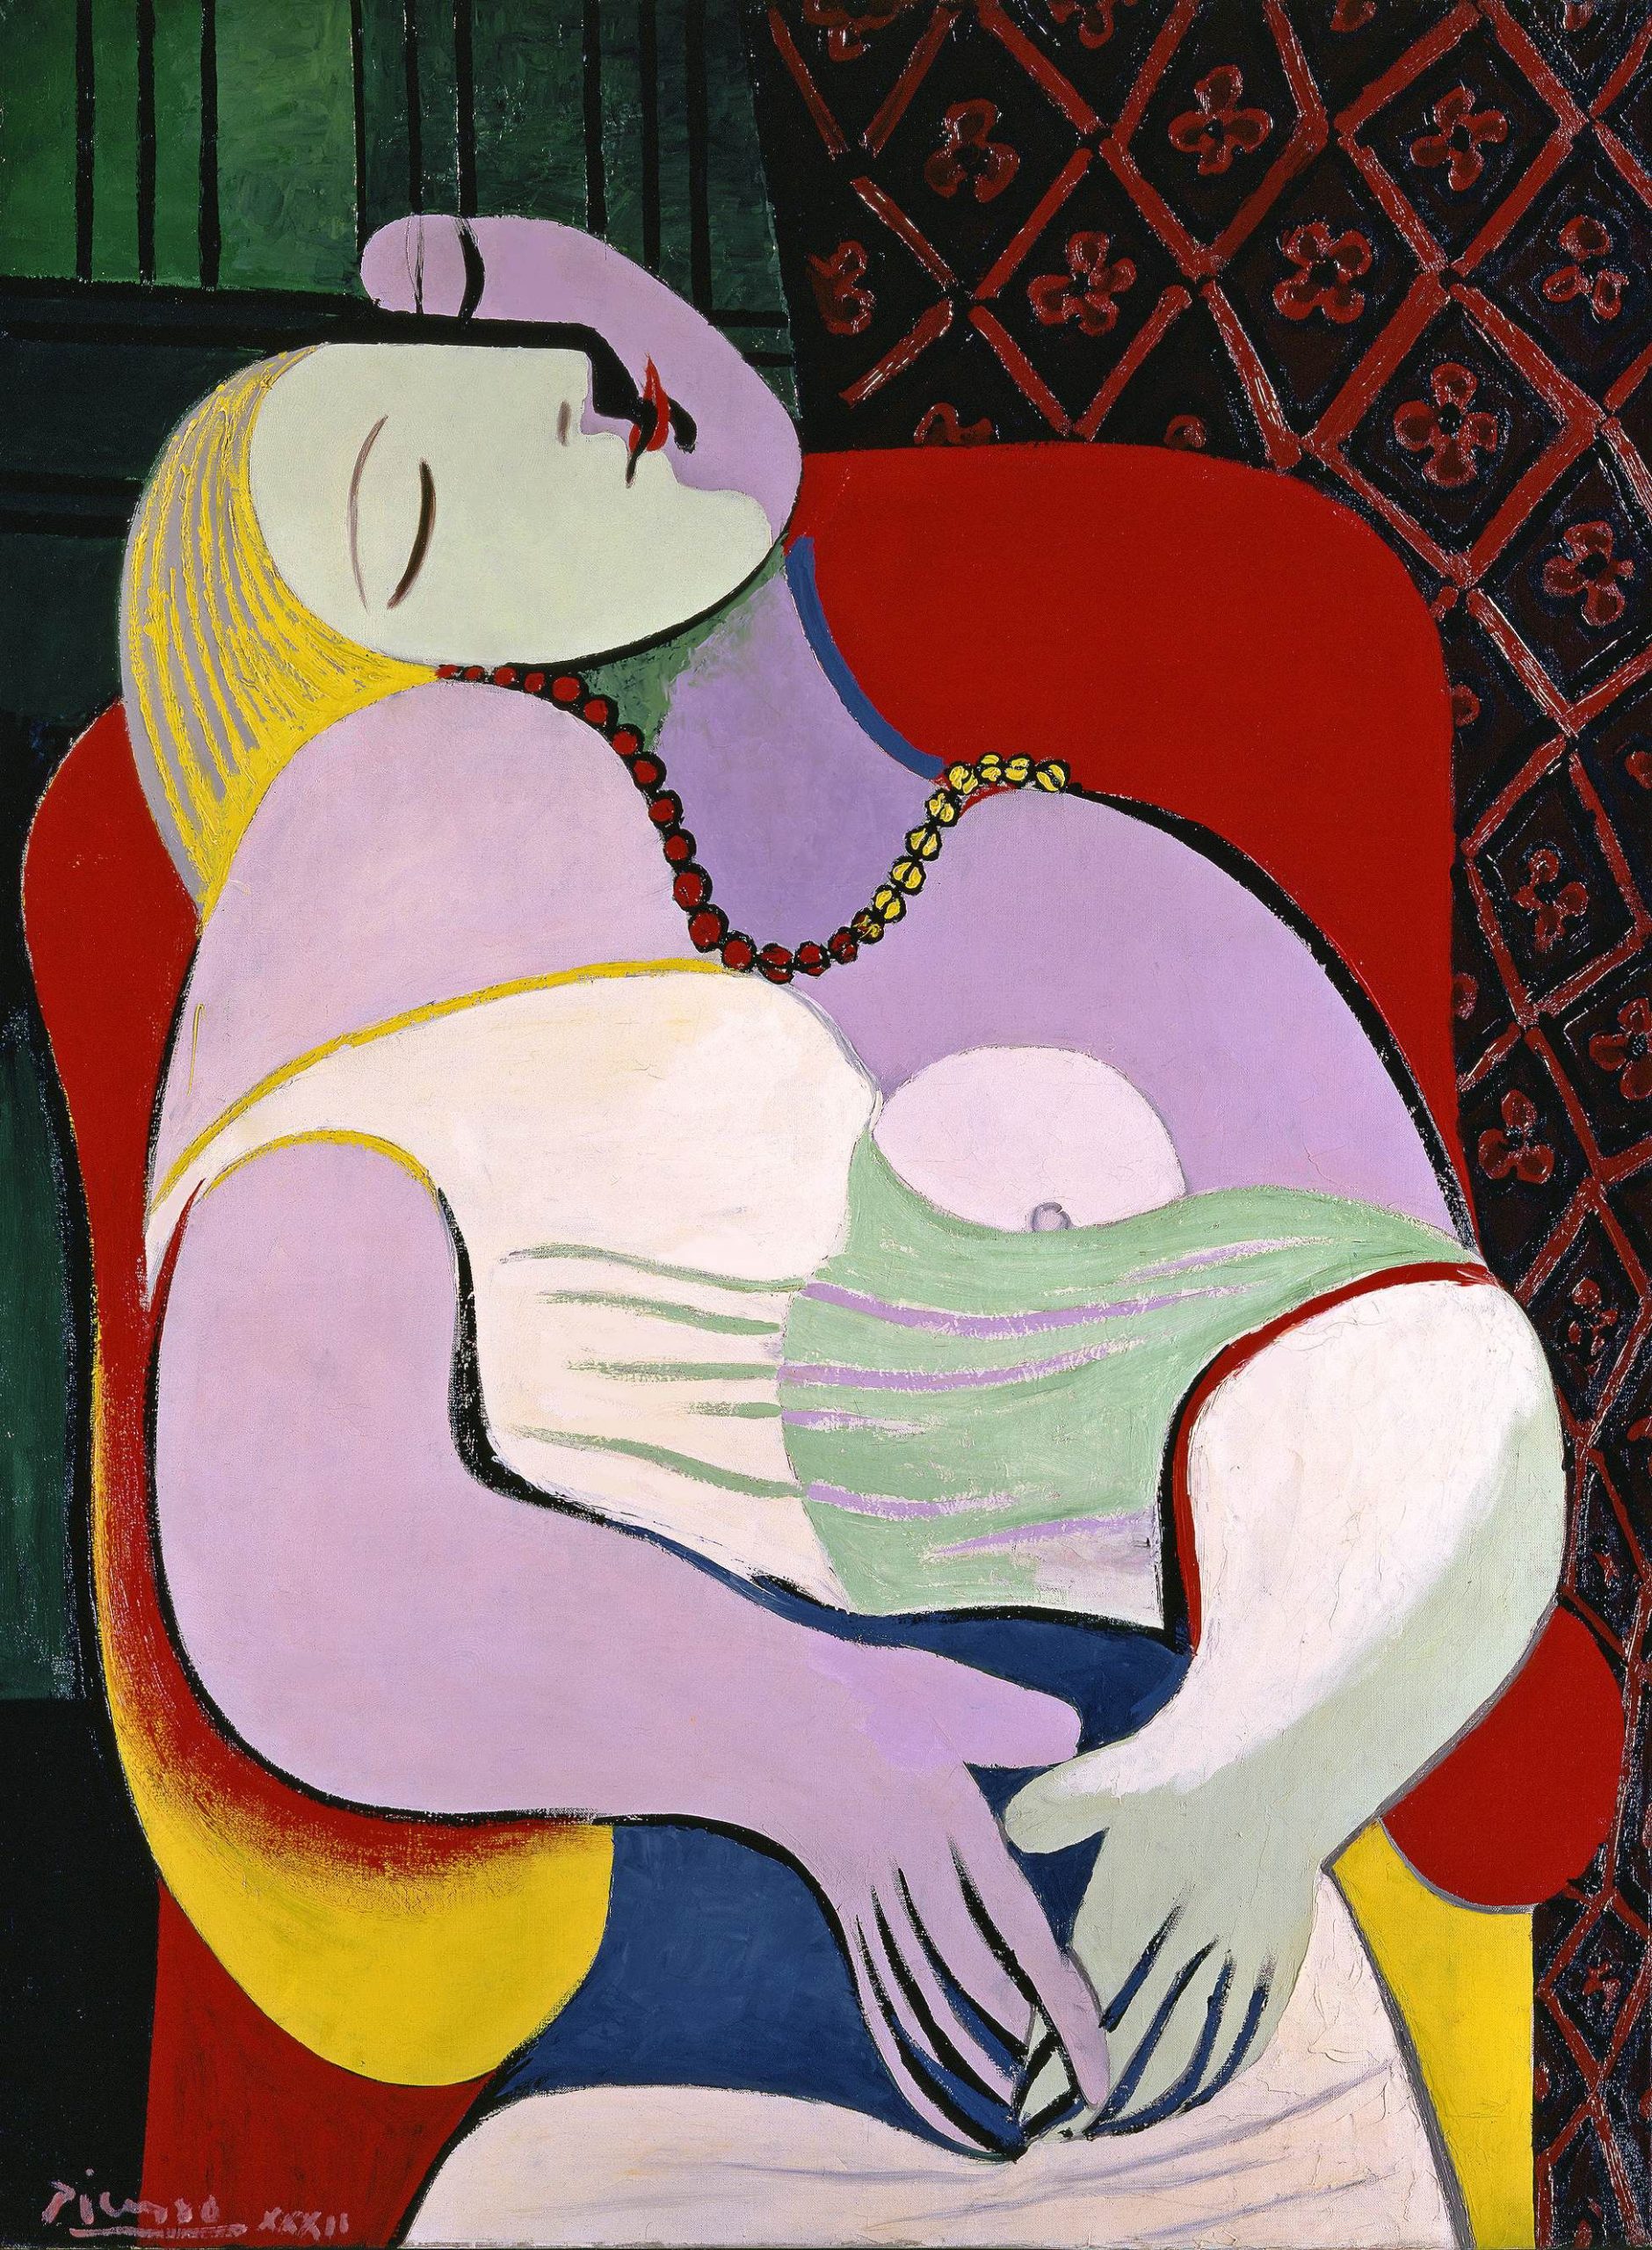 The Dream Picasso 1932